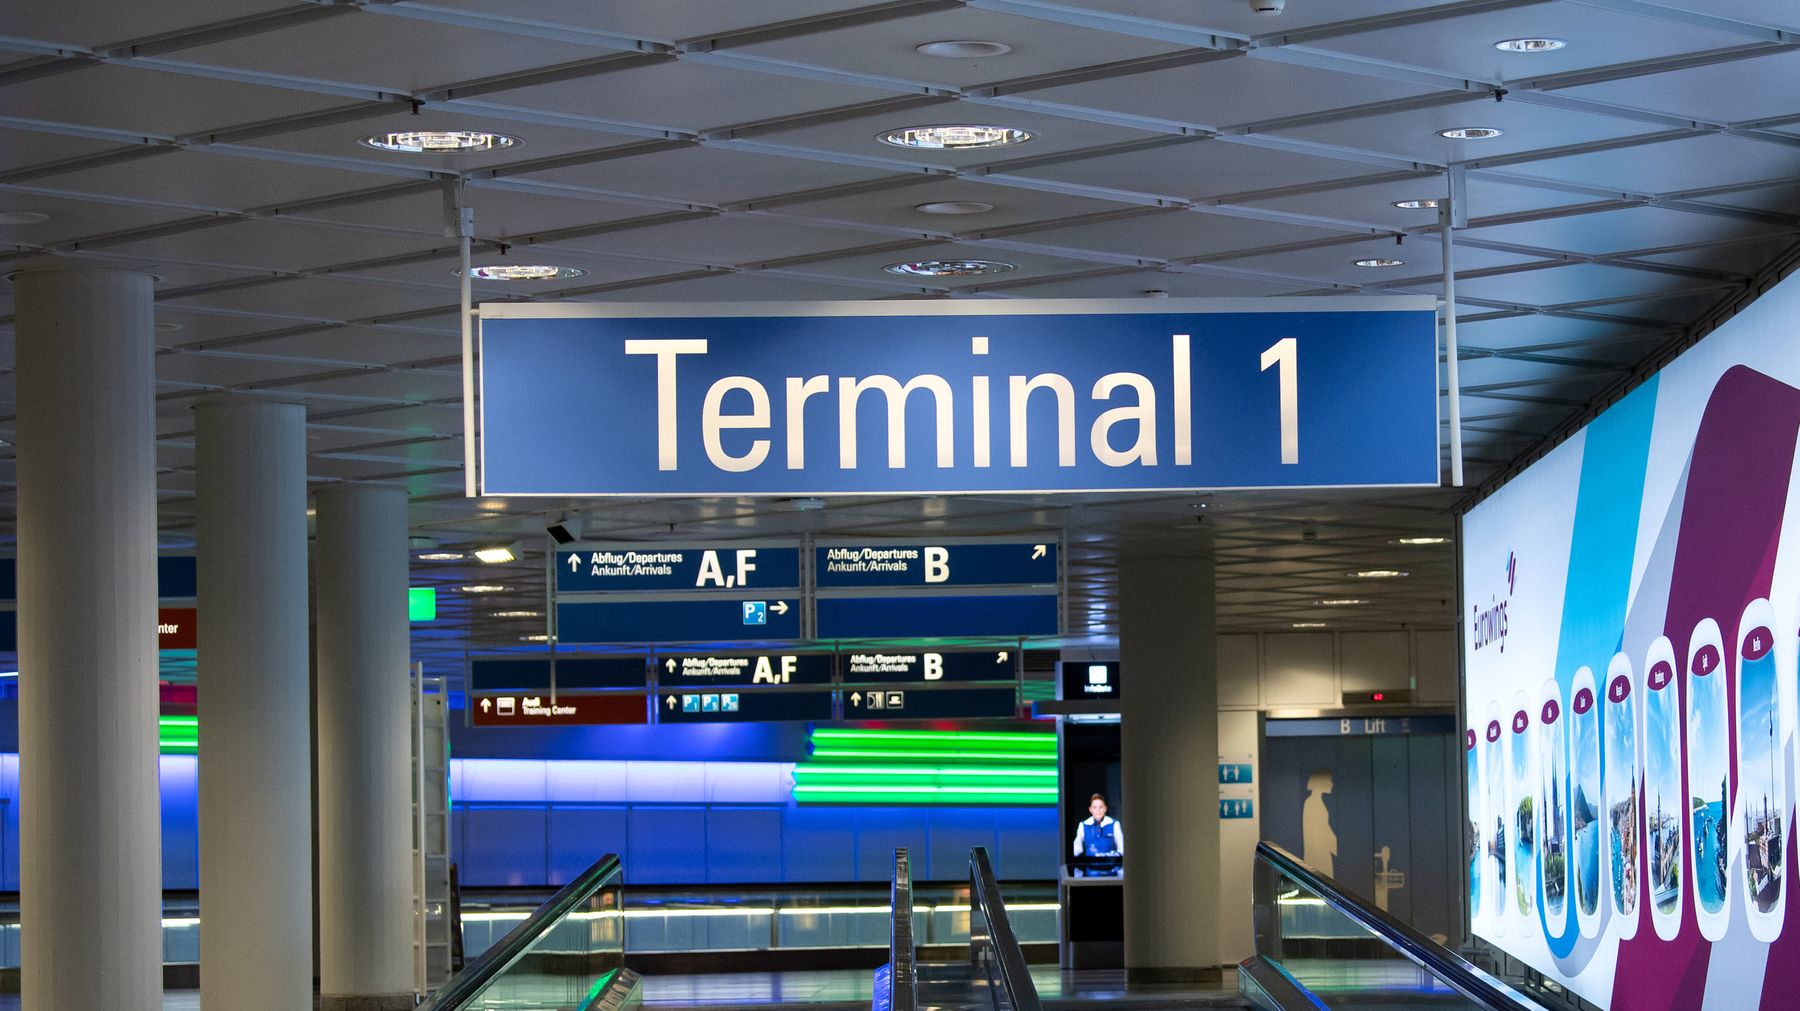 Münchner Flughafen: Terminal 1 wieder in Betrieb | BR24